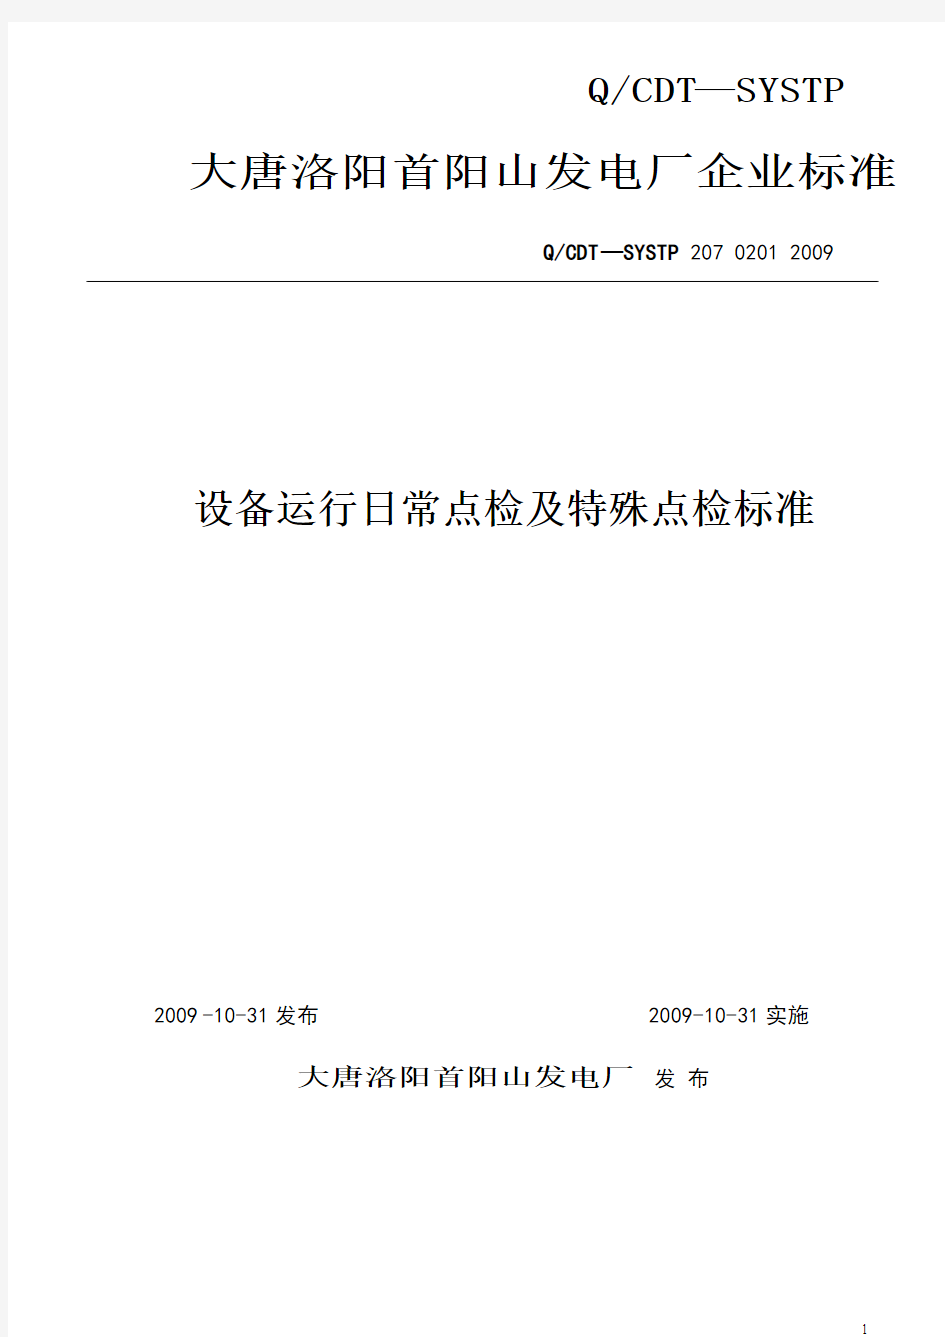 大唐洛阳首阳山发电厂设备运行日常点检及特殊点检标准09.10.23(修订)